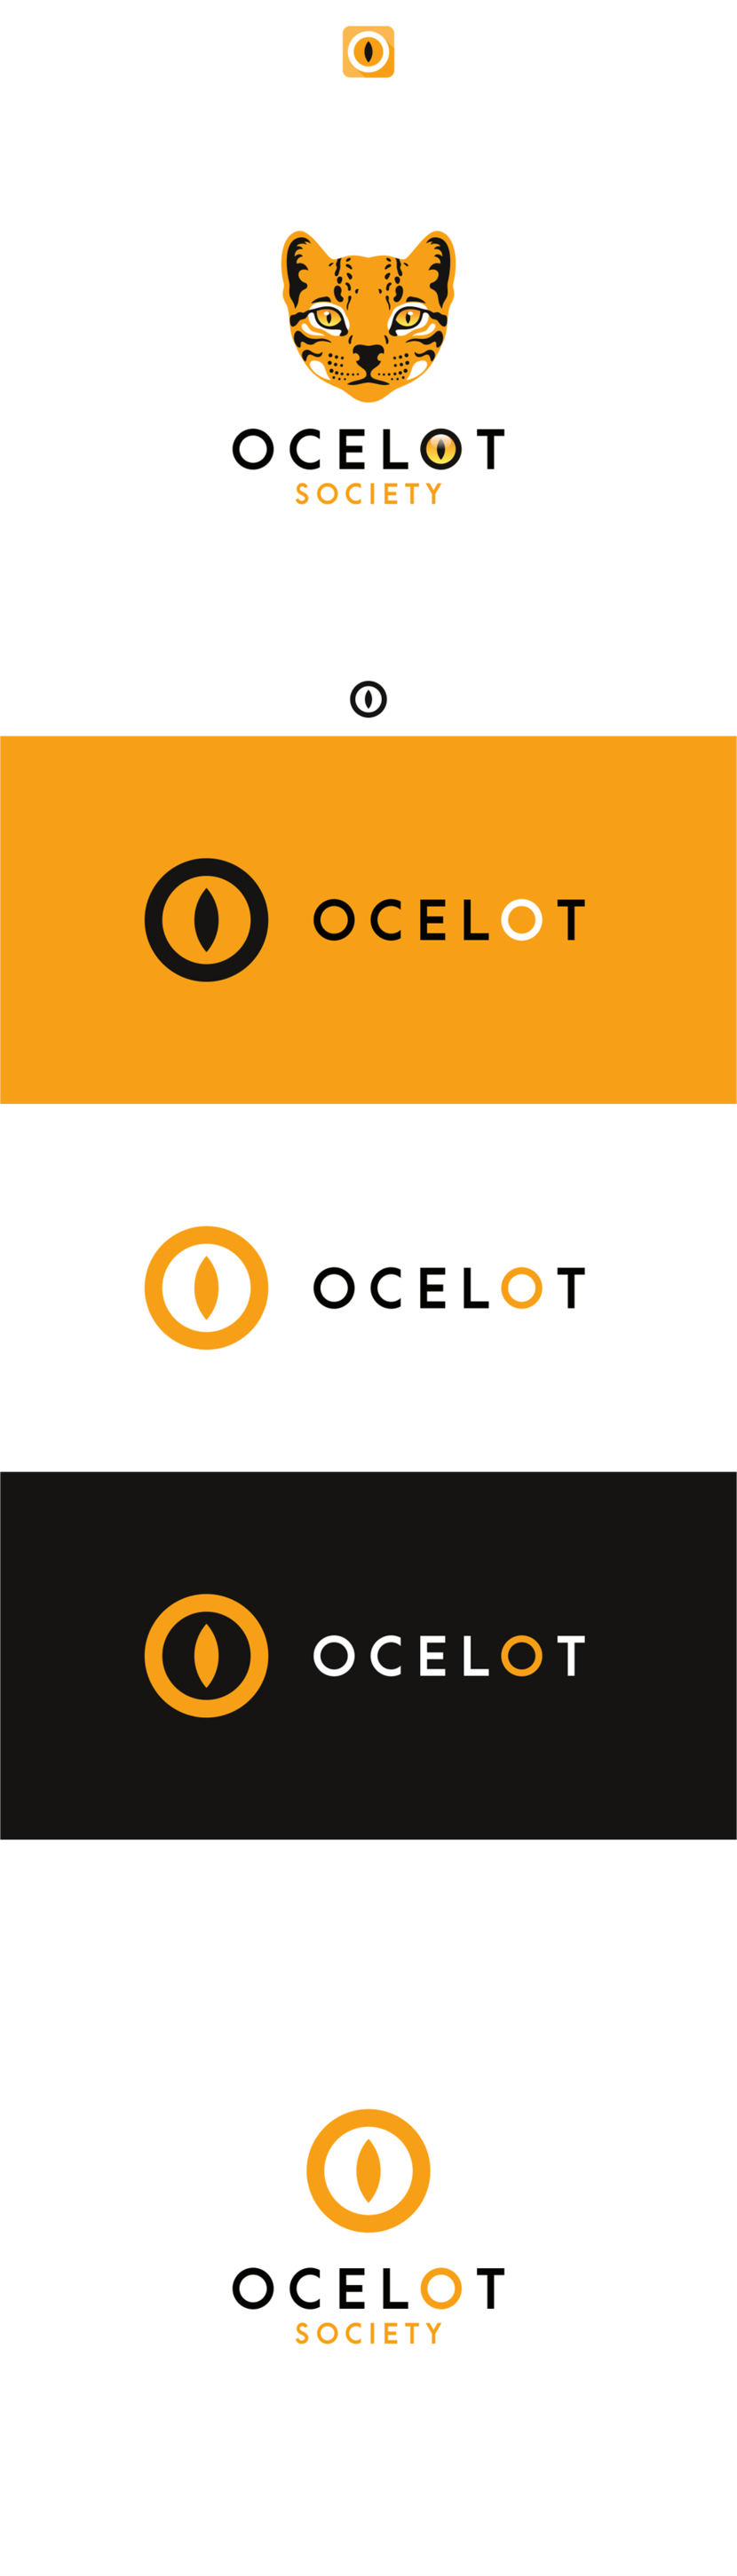 По сути в данной концепции логотипом (знаком, иконкой в том числе) является стилизованная О в виде глаза Оцелота. Иллюстрация же мордочки, скажем полным графическим вариантом знака))) - Логотип для парижской студии разработки видеоигр Ocelot Society